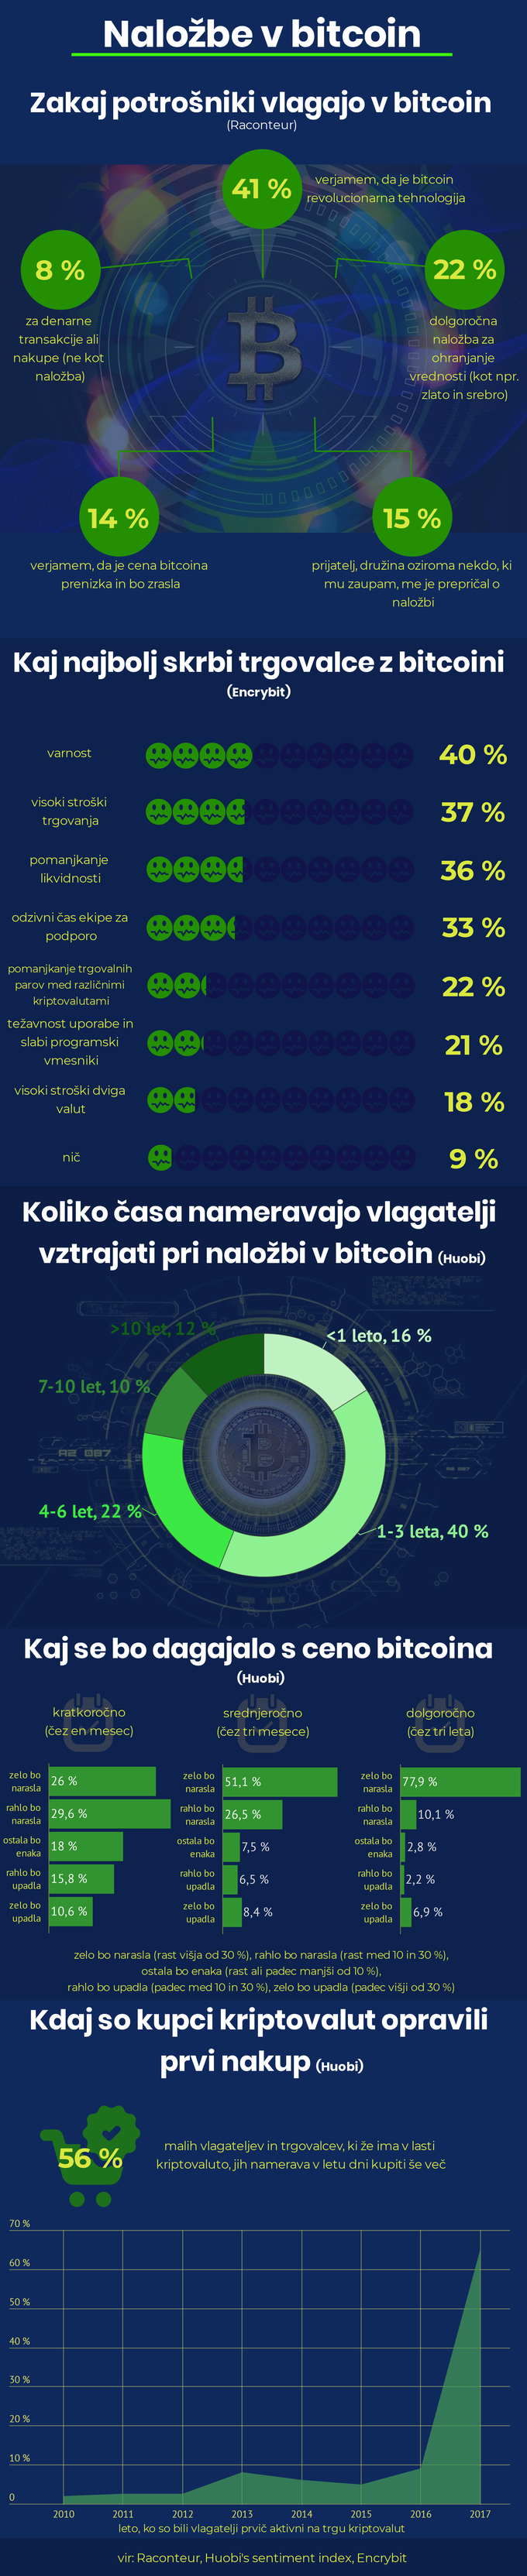 Trajanje investicije v bitcoin | Foto: Infografika: Marjan Žlogar